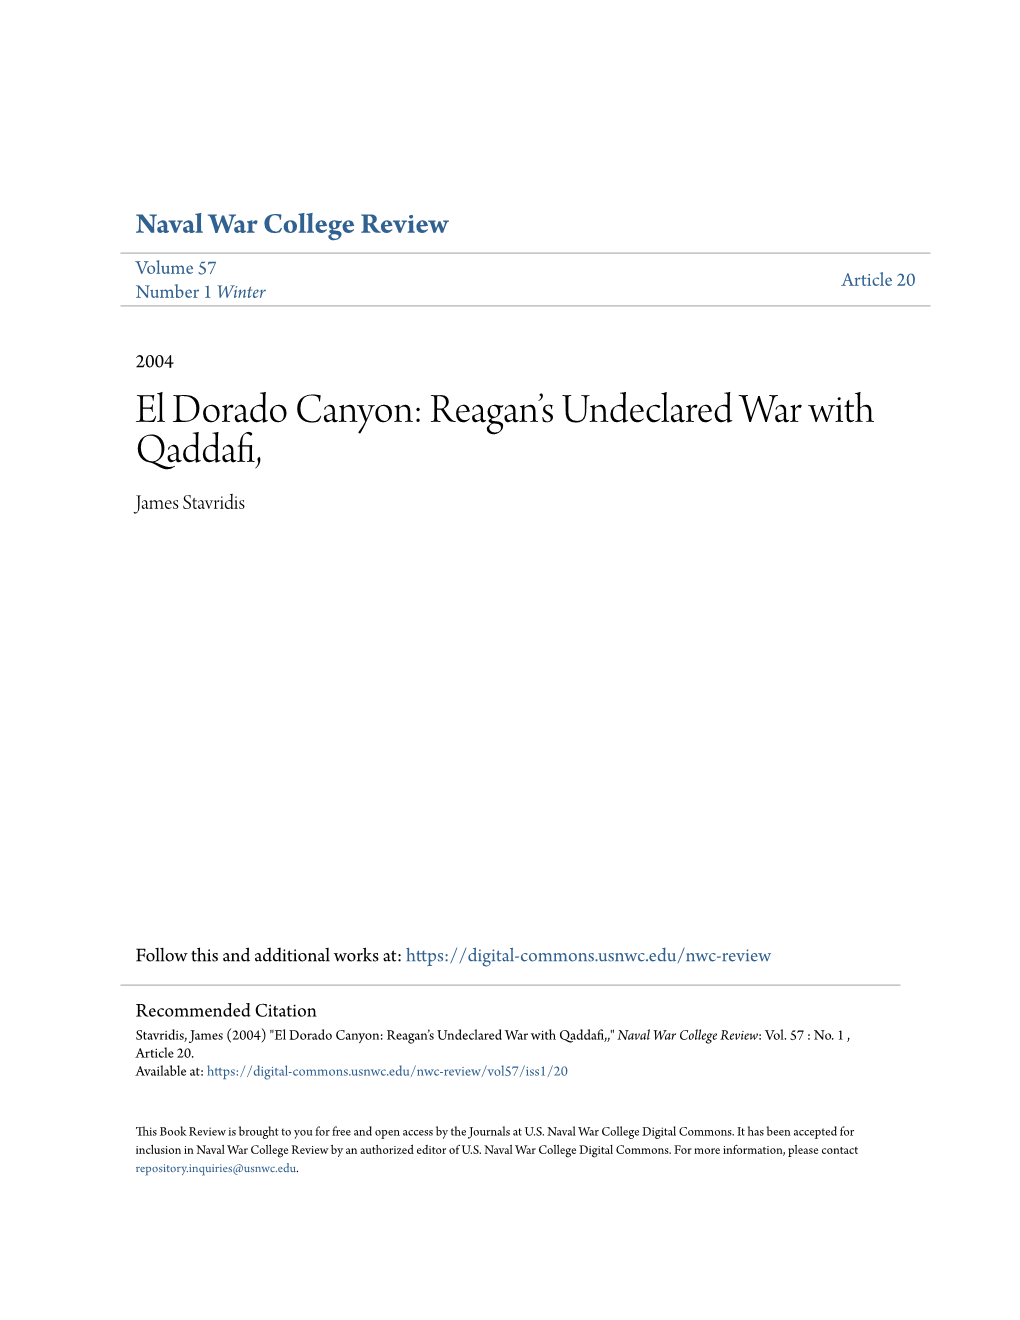 El Dorado Canyon: Reagan's Undeclared War with Qaddafi